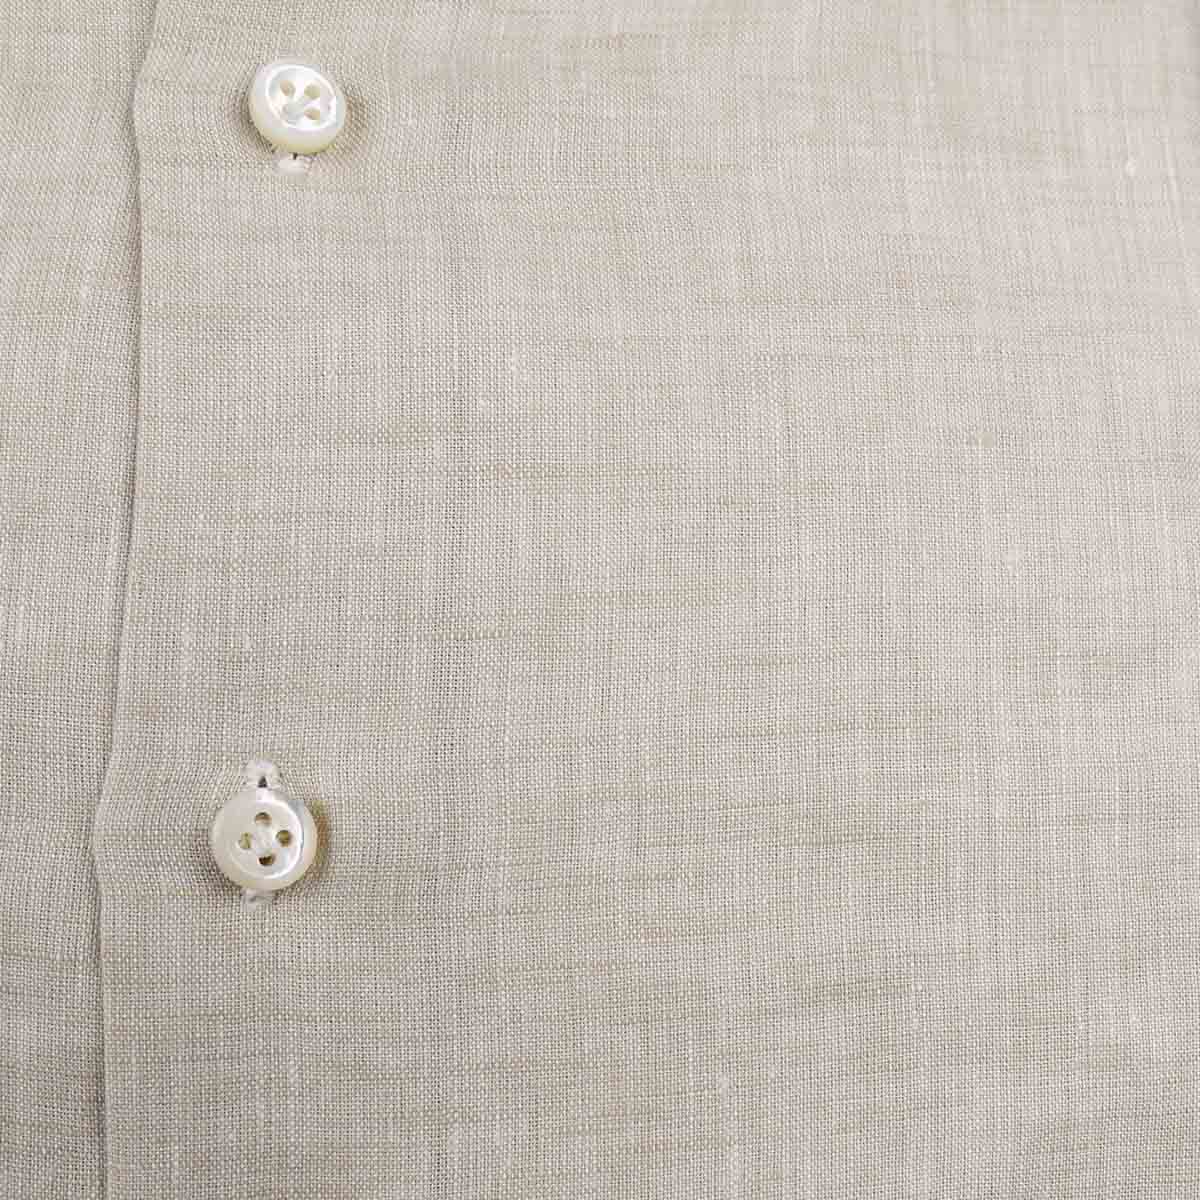 Cesare attolini smėlio spalvos lininiai marškiniai